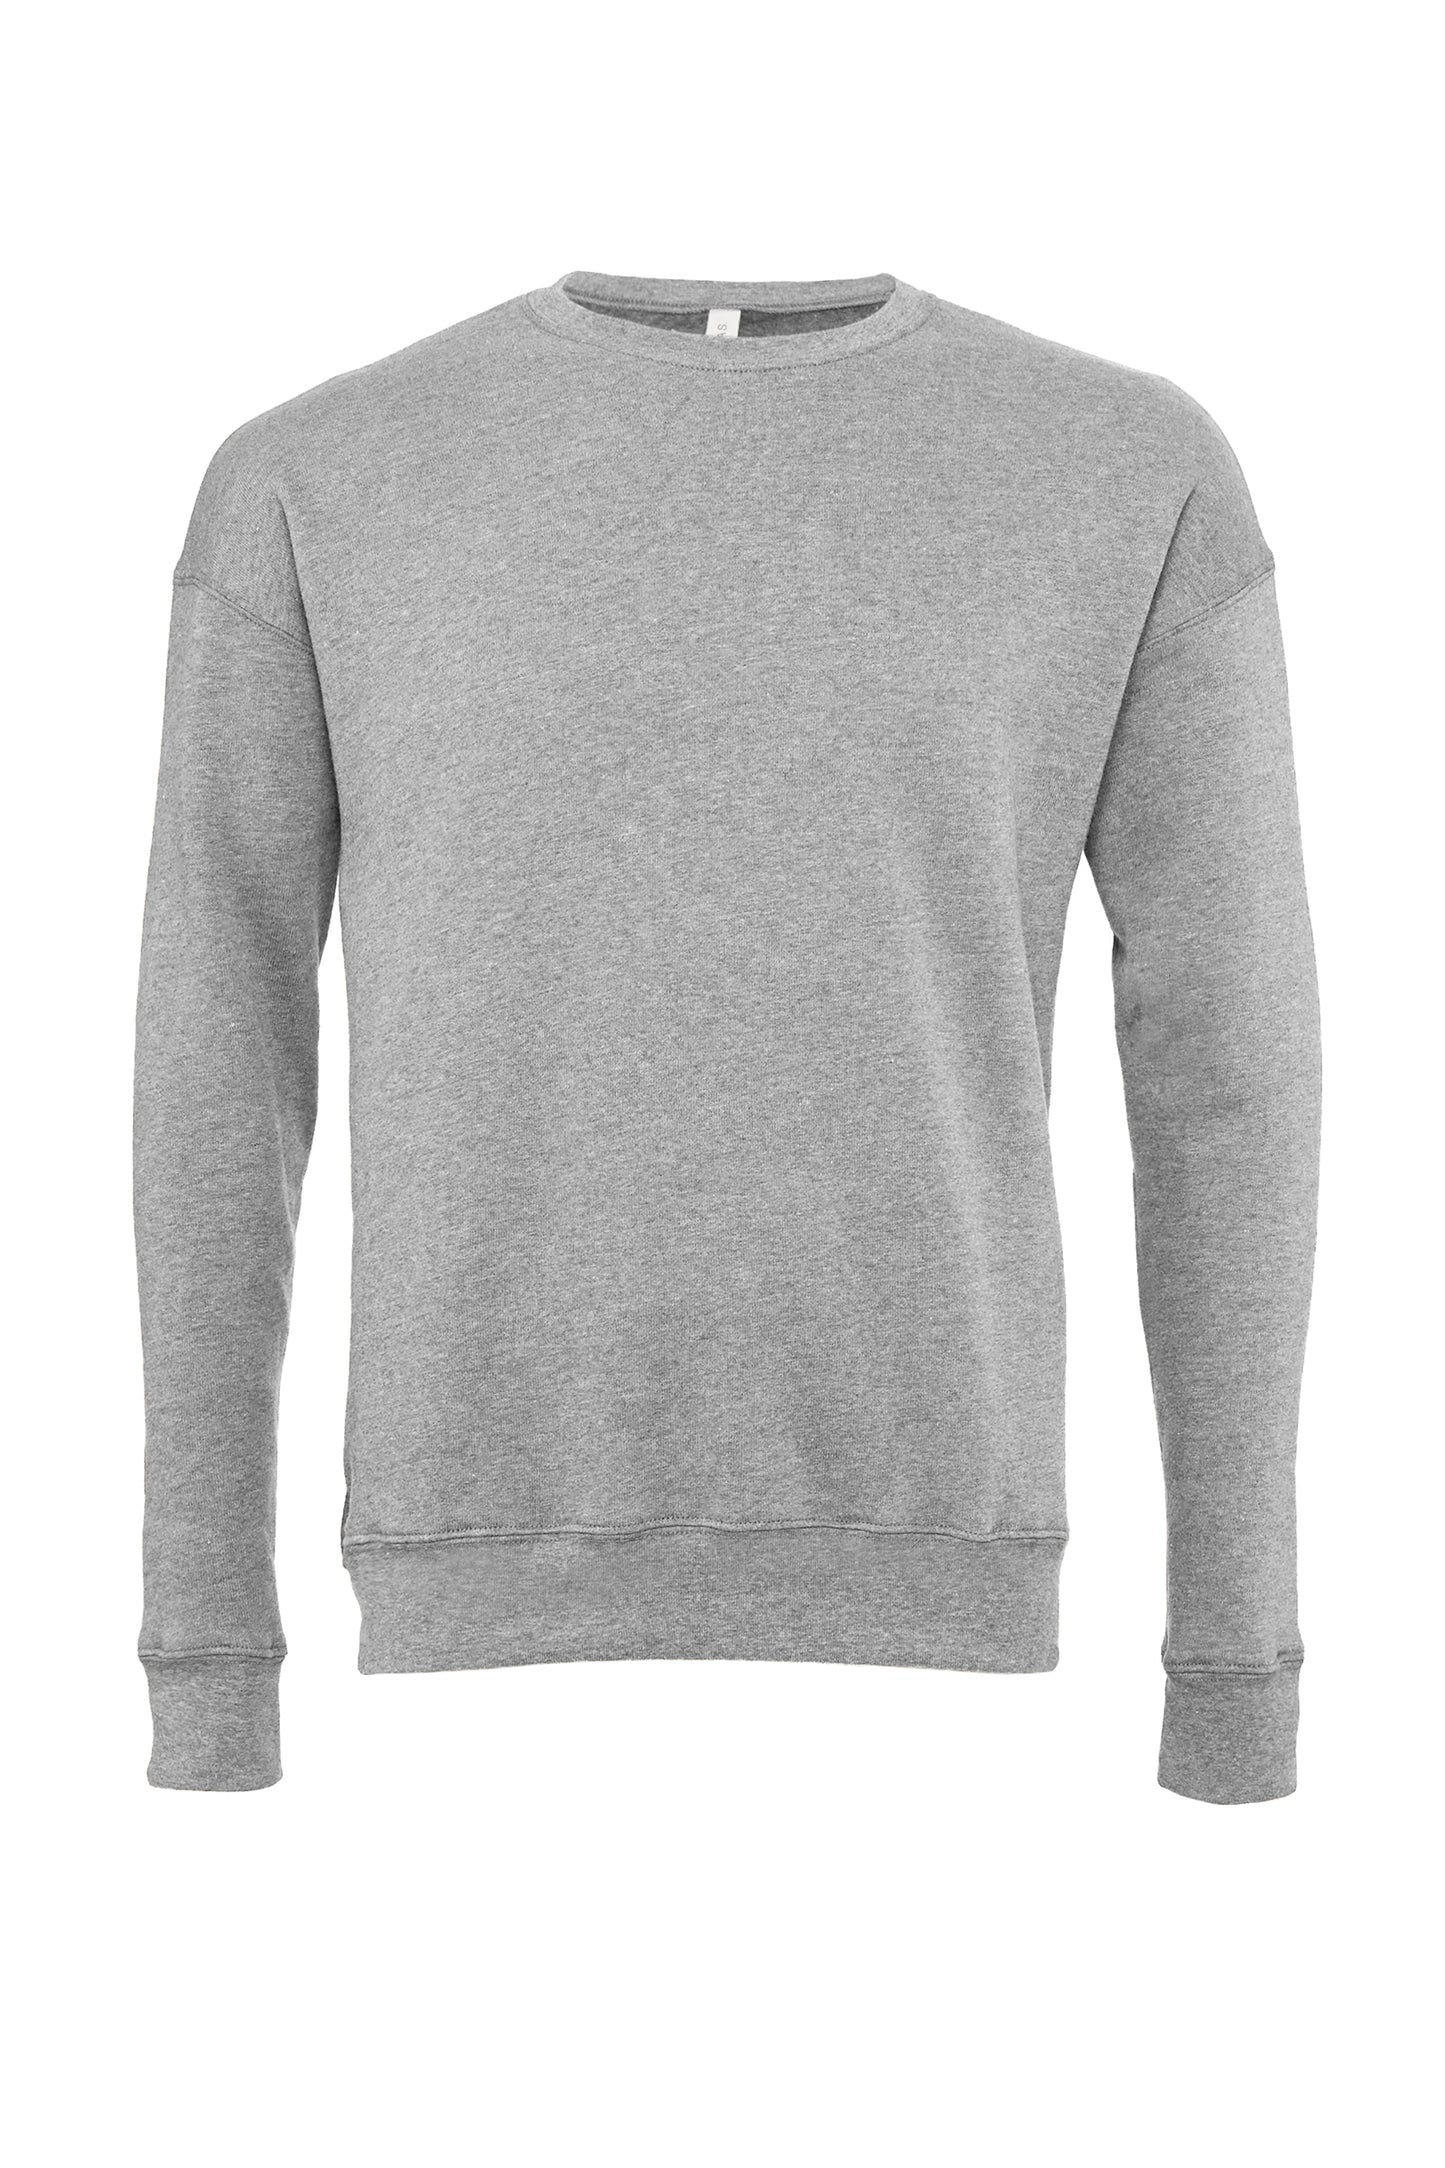 Crewneck Fleece Sweatshirt DTG Print